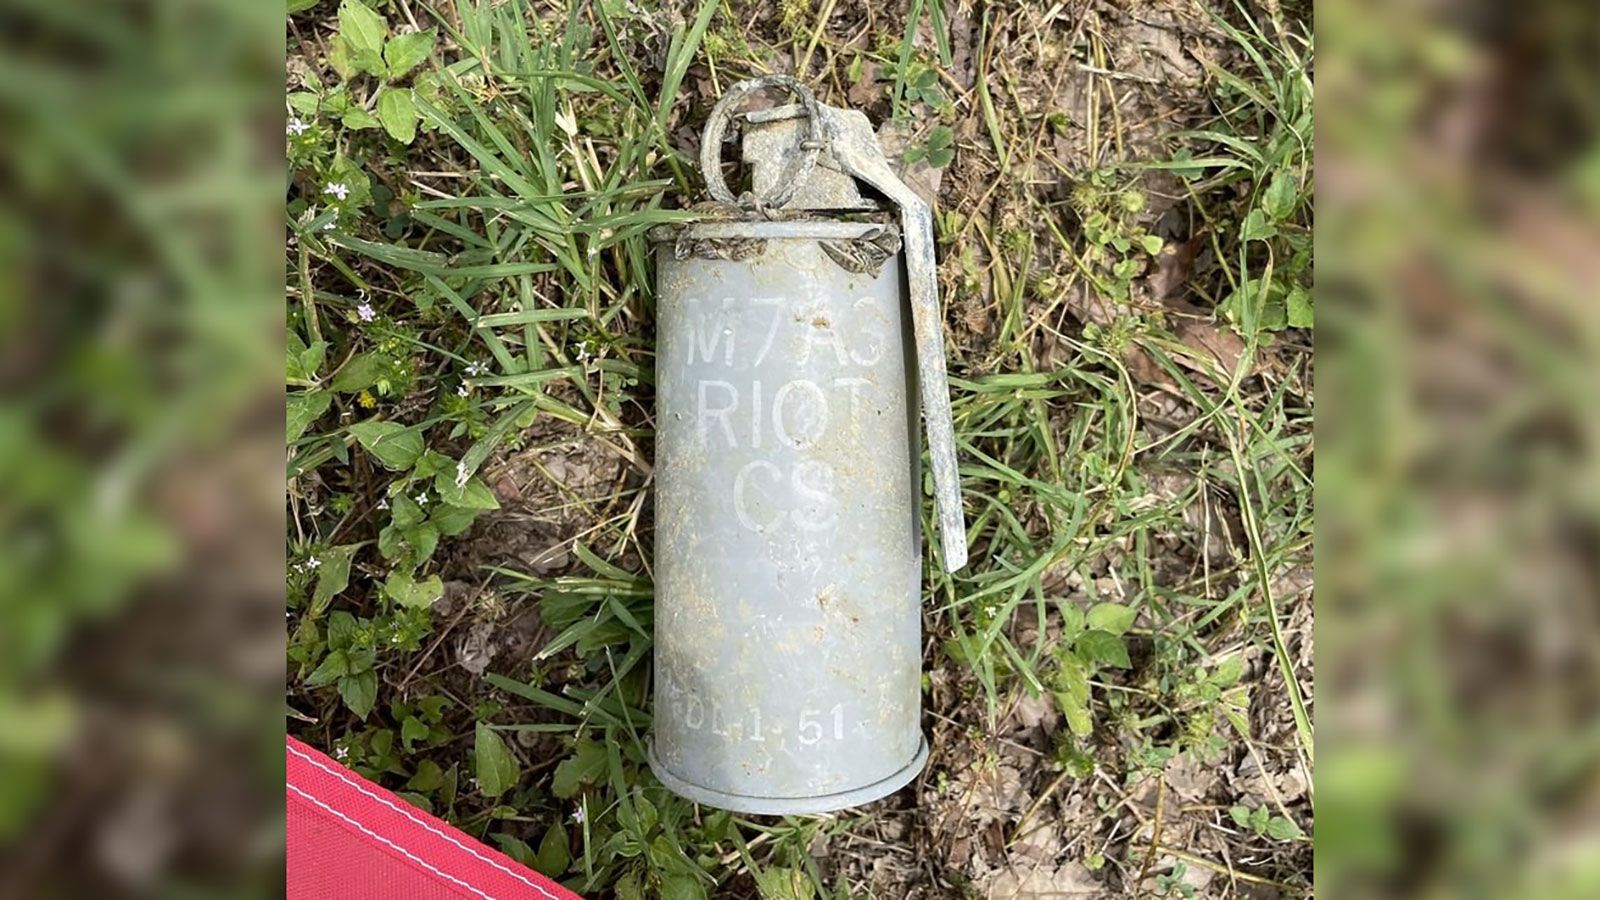 mustard gas grenade